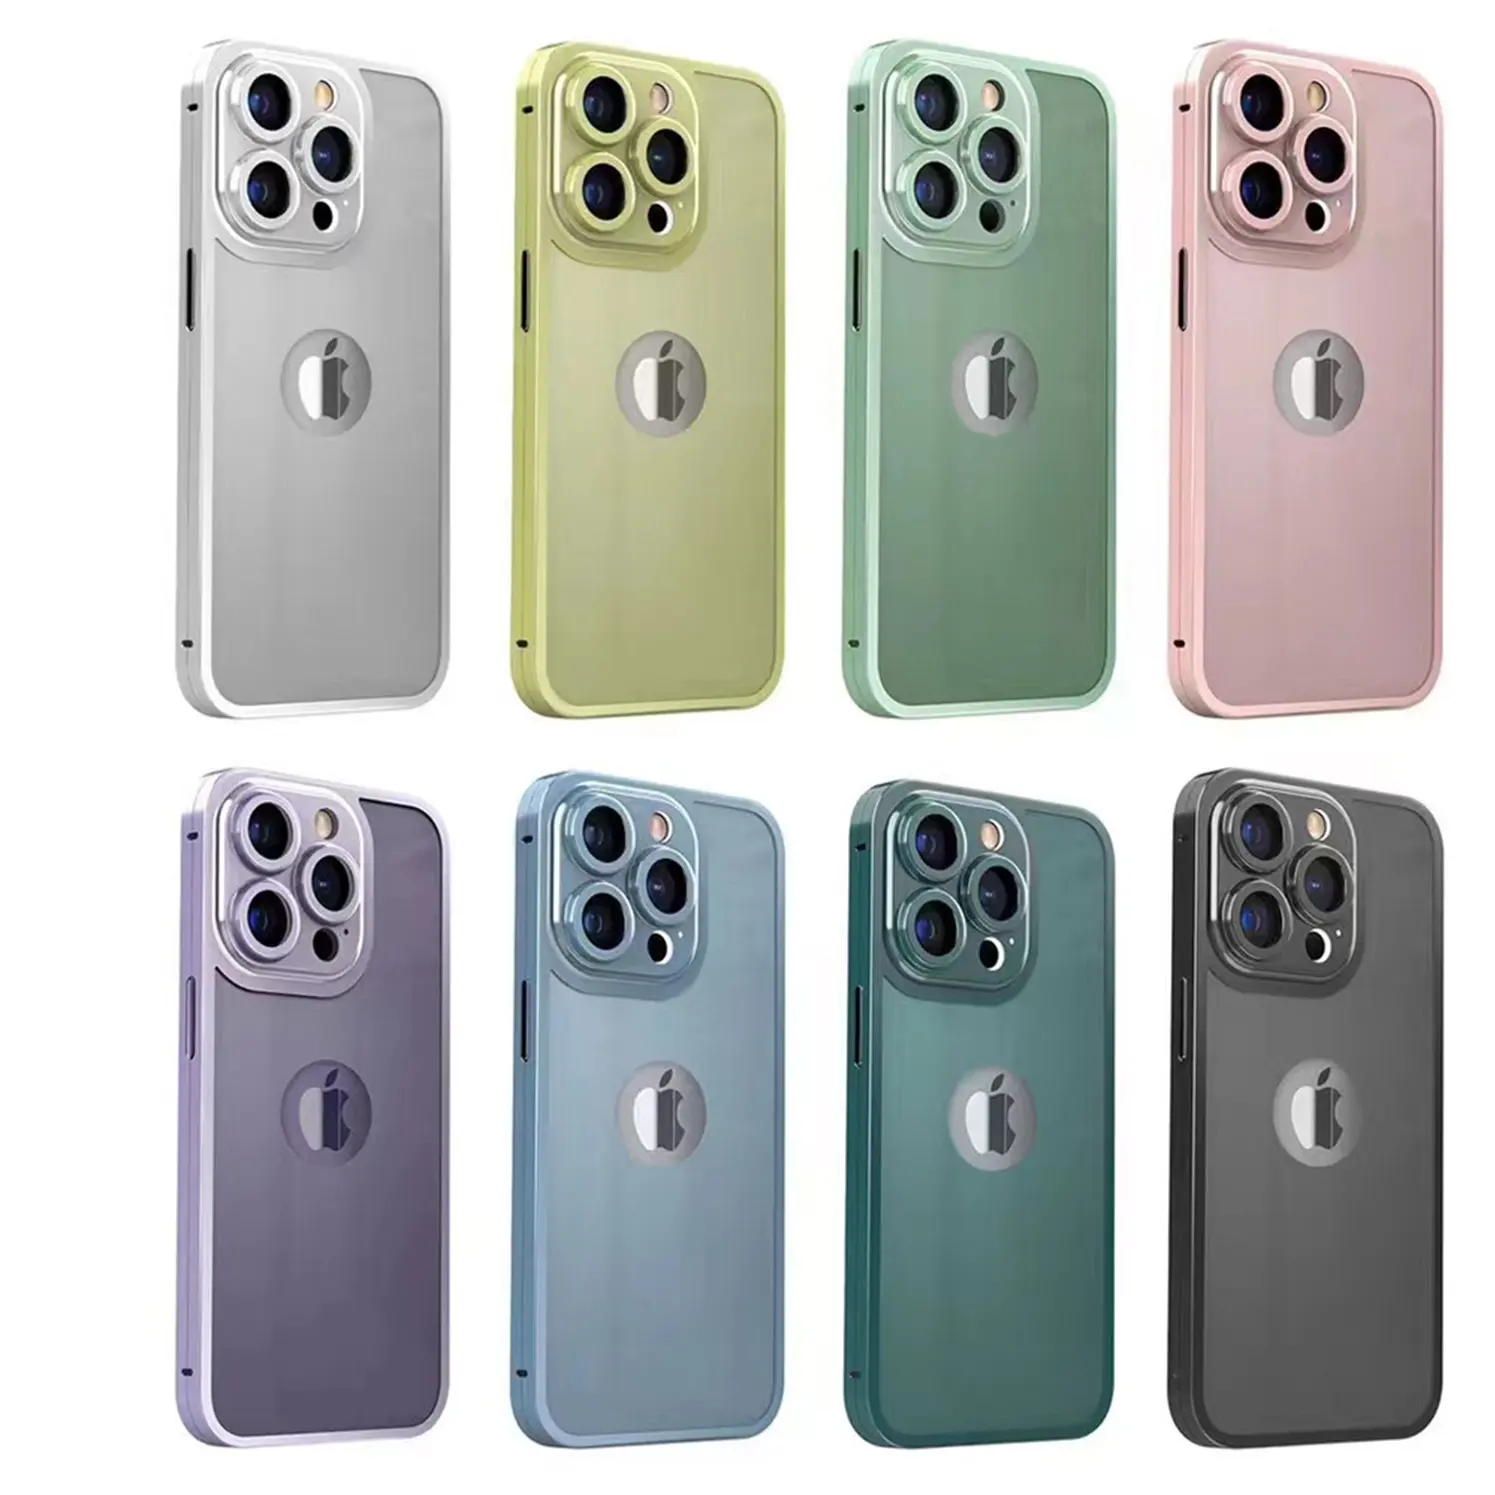 IPhone 13 Pro 최대 화면 보호기 유리 카메라 렌즈 보호기 티타늄 금속 전화 케이스 용 5 in 1 전체 보호 세트